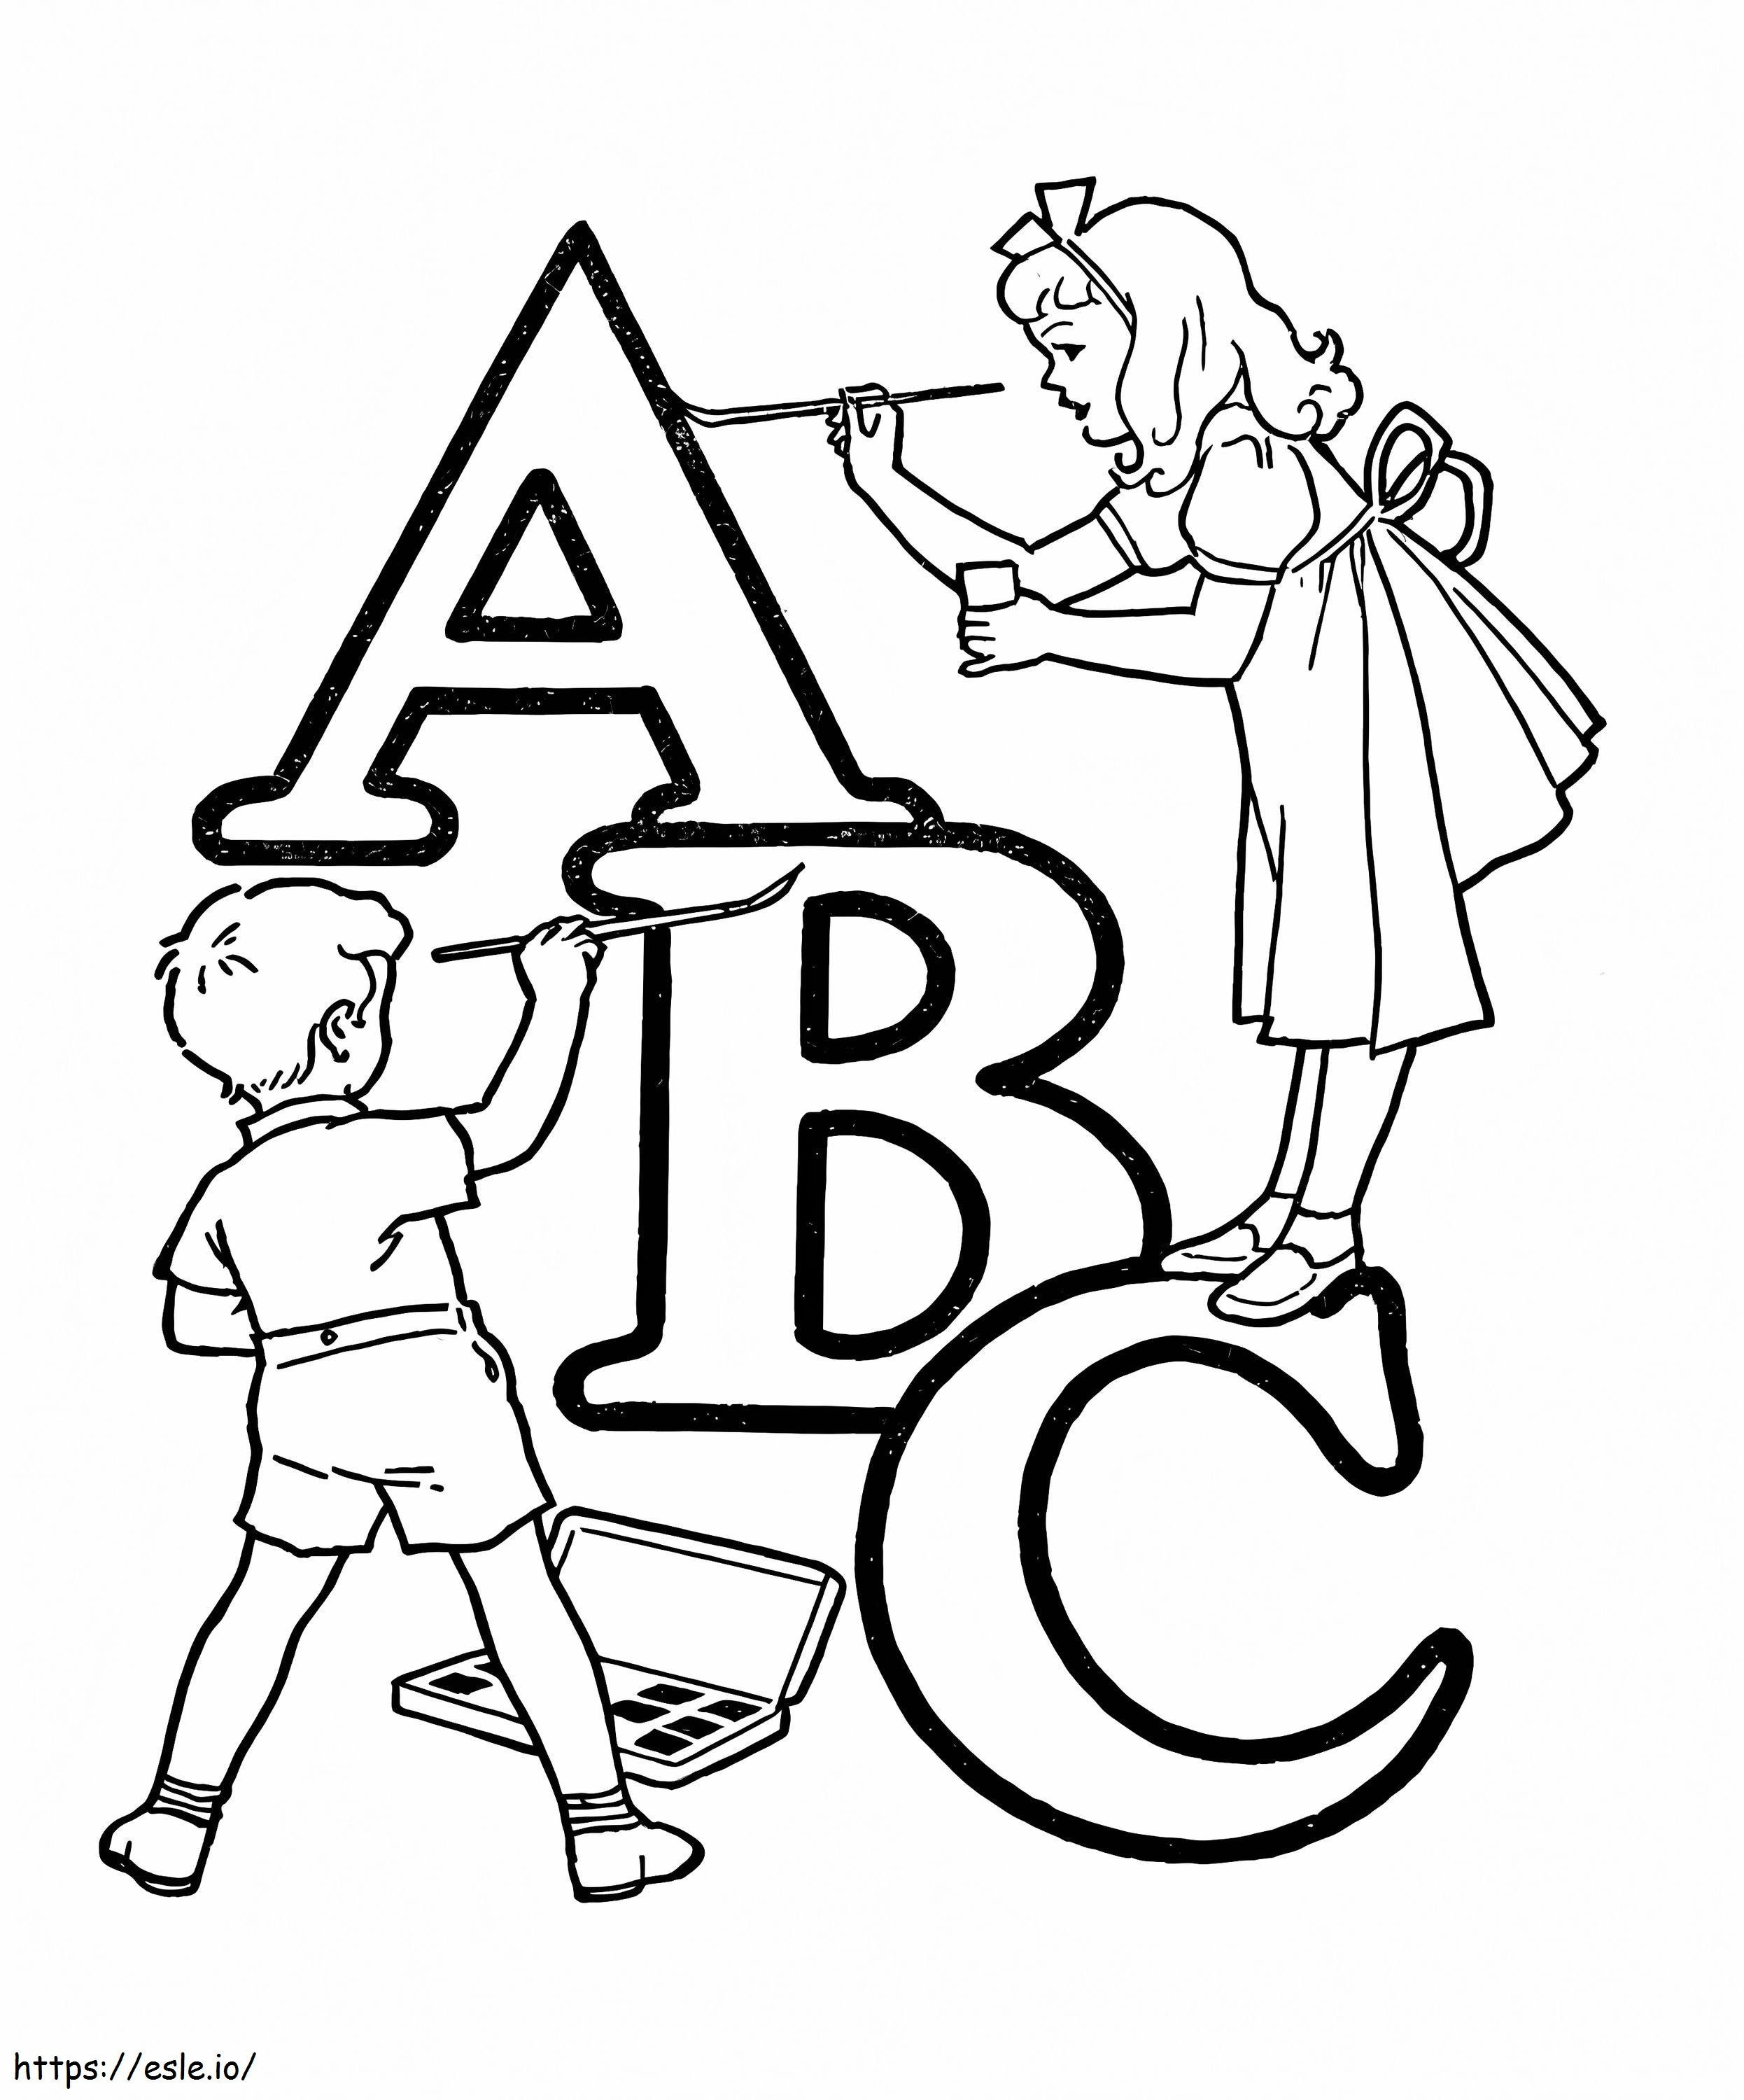 Dzieci Z ABC kolorowanka